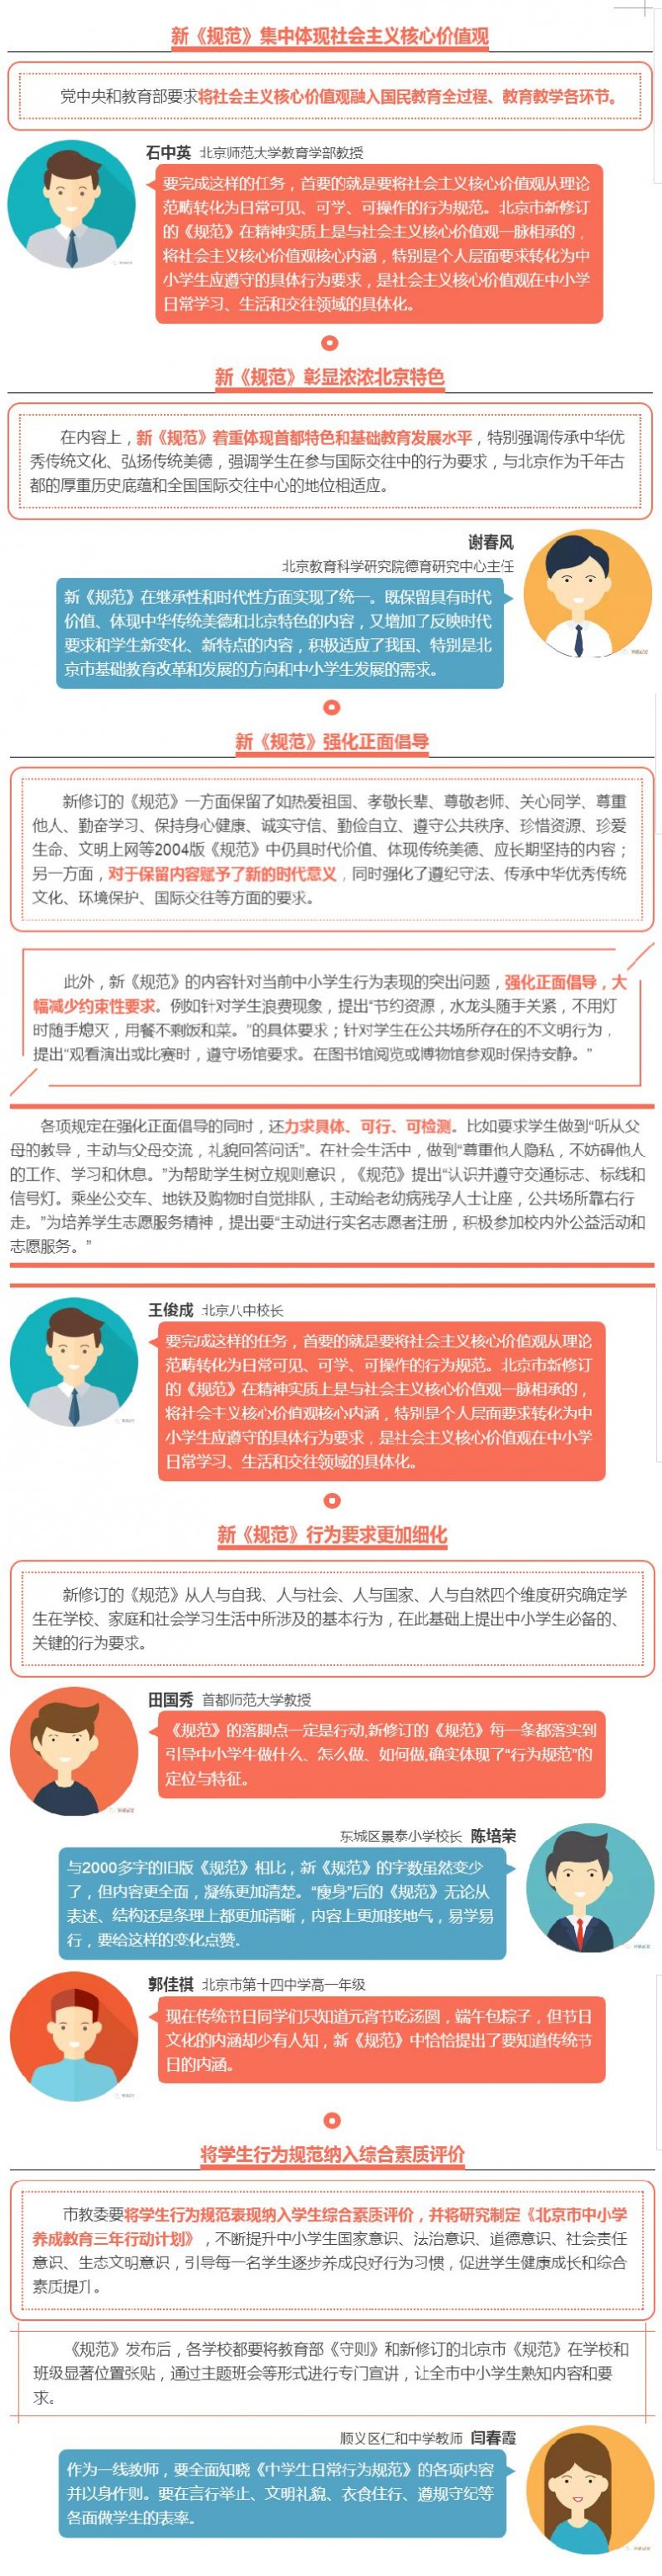 中小学生日常行为规范 2017北京市中小学生日常行为规范全文